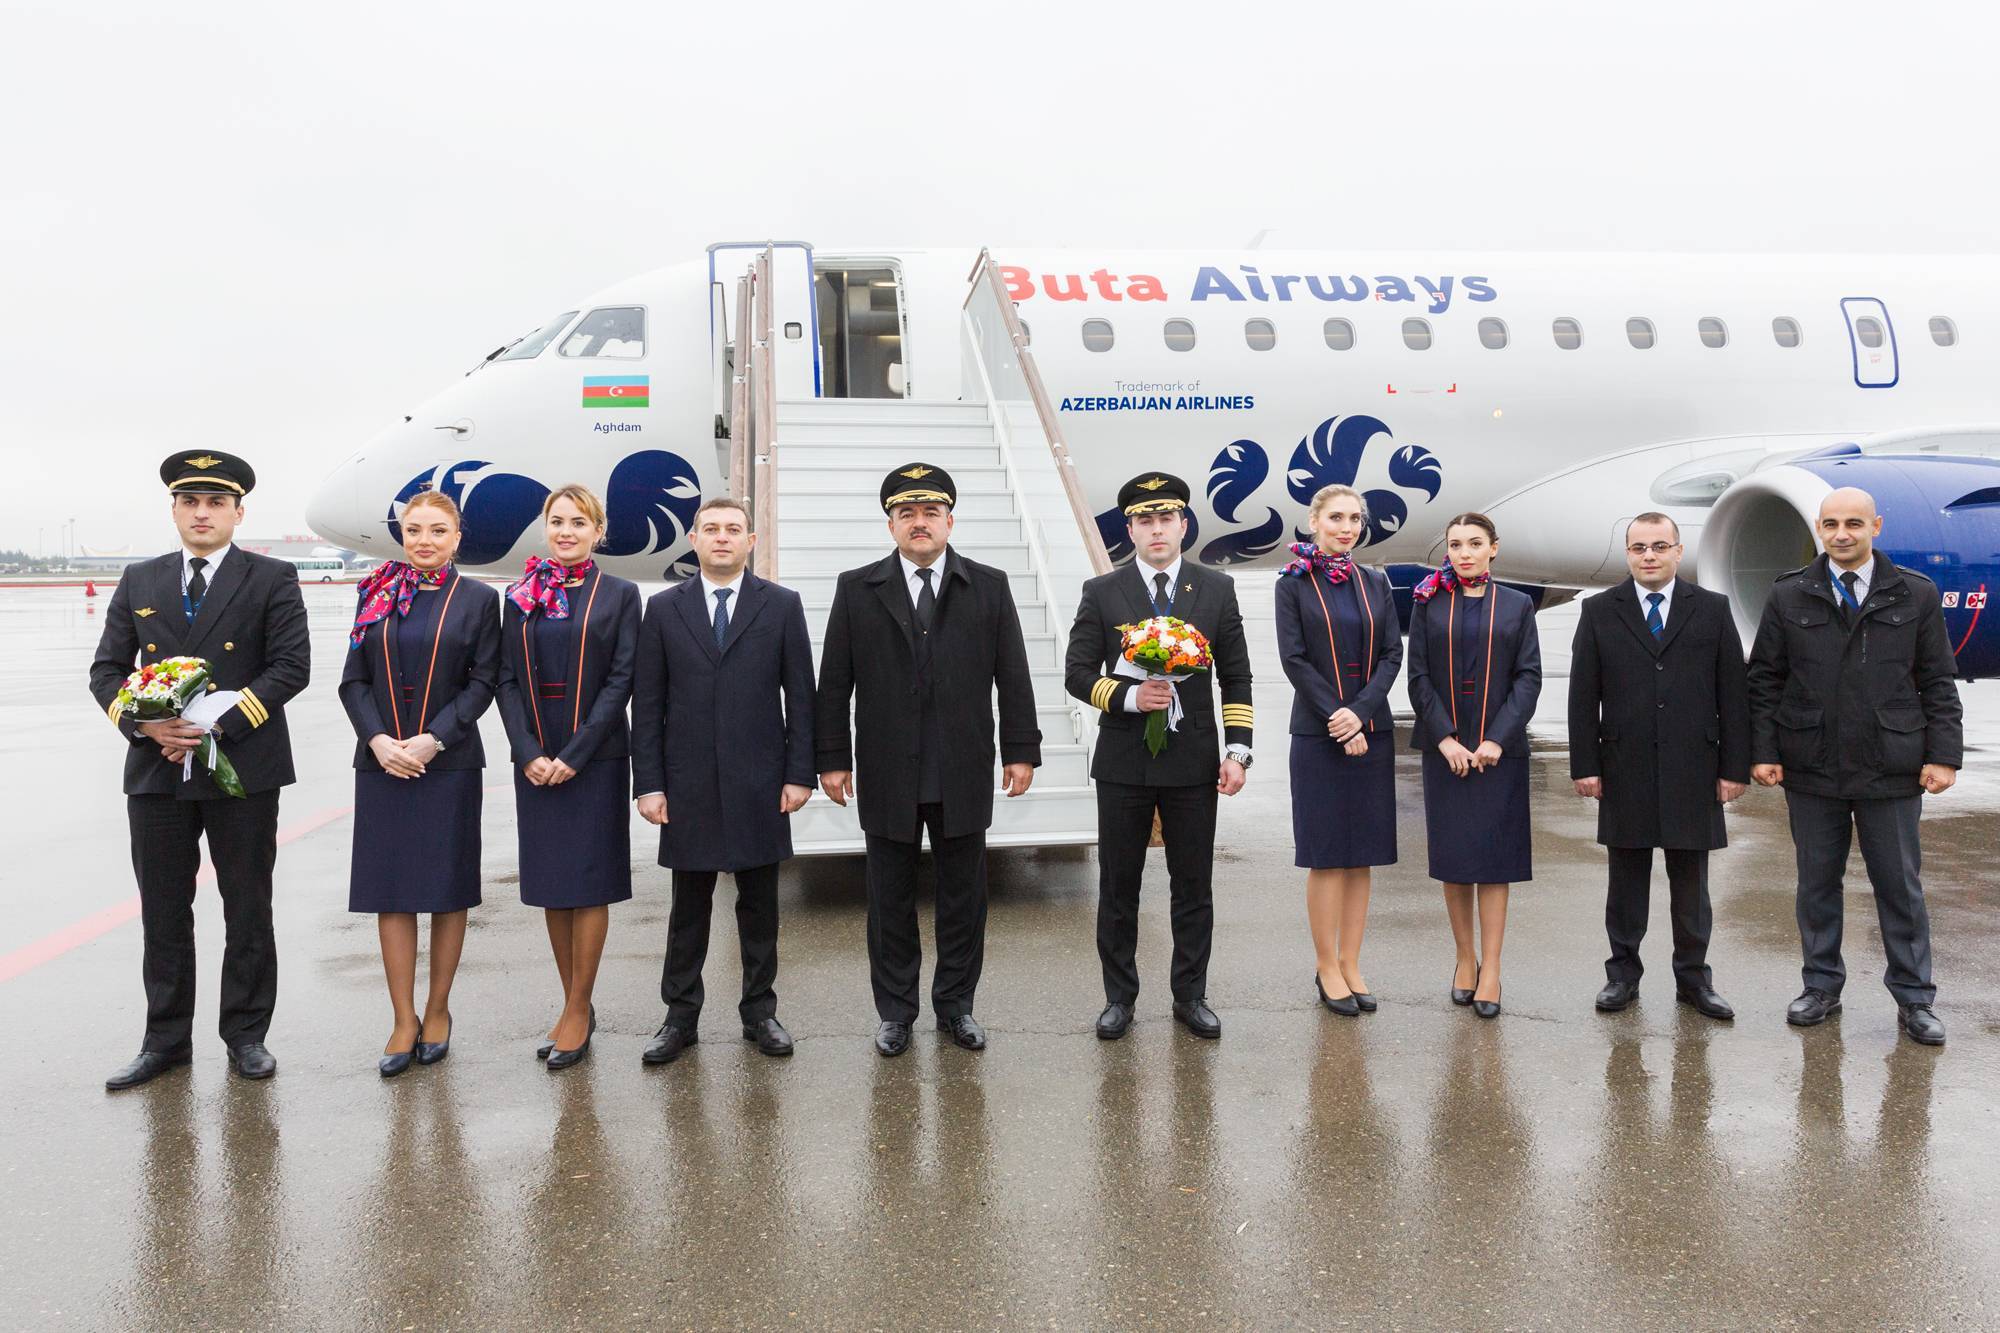 Бюджетная азербайджанская авиакомпания Buta Airways (AZ)